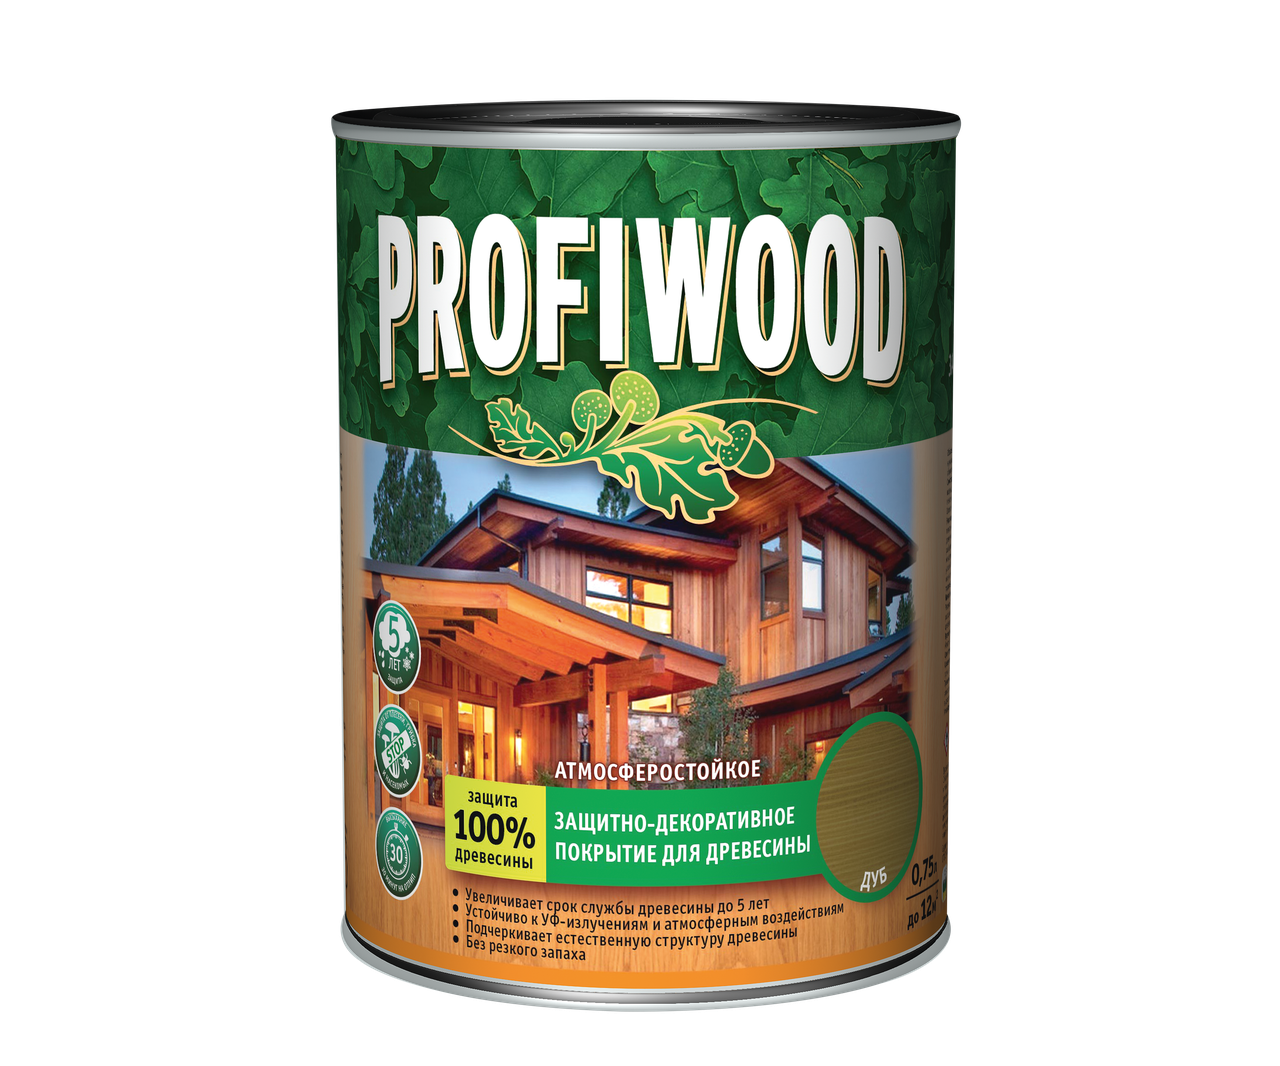 Защитно-декоративное покрытие для древесины PROFIWOOD калужница 2.5л / 2.3 кг